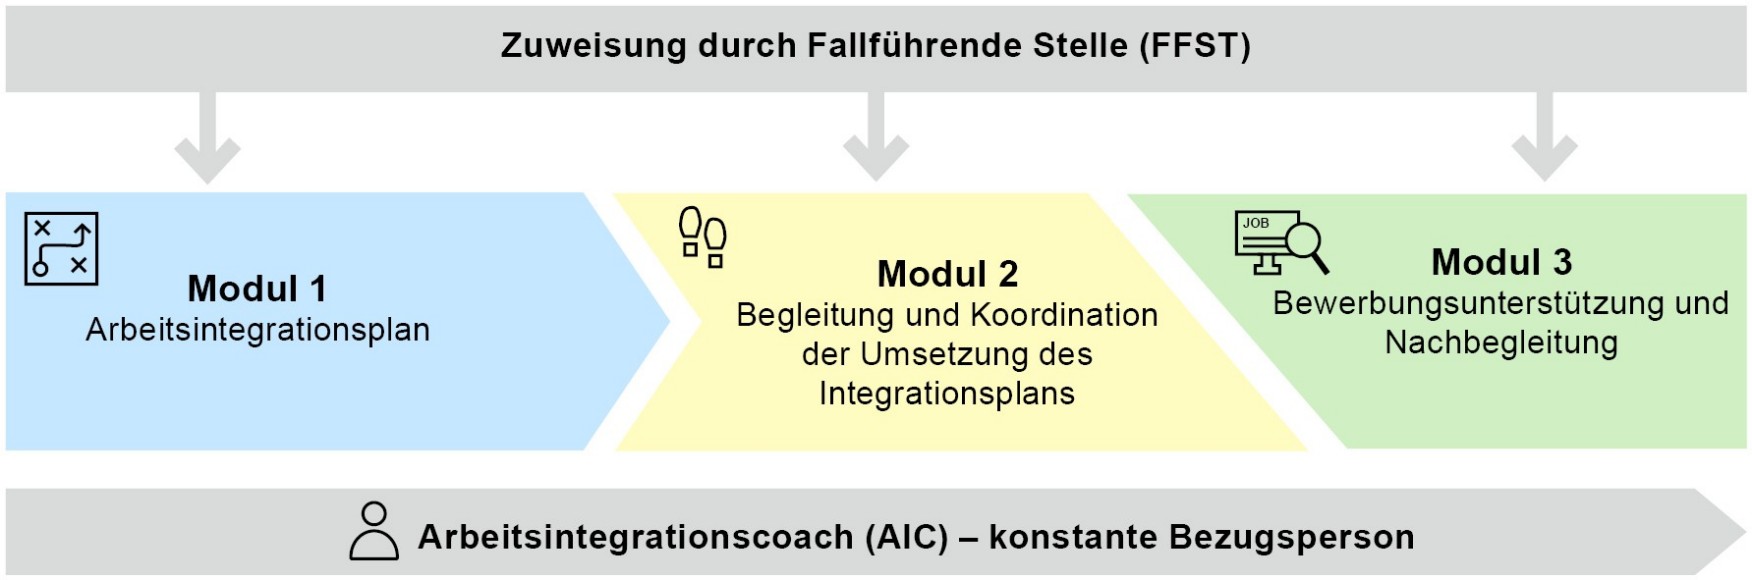 200615_Akkreditierung_FB-Abklärung Vermittlung_Grafik_6